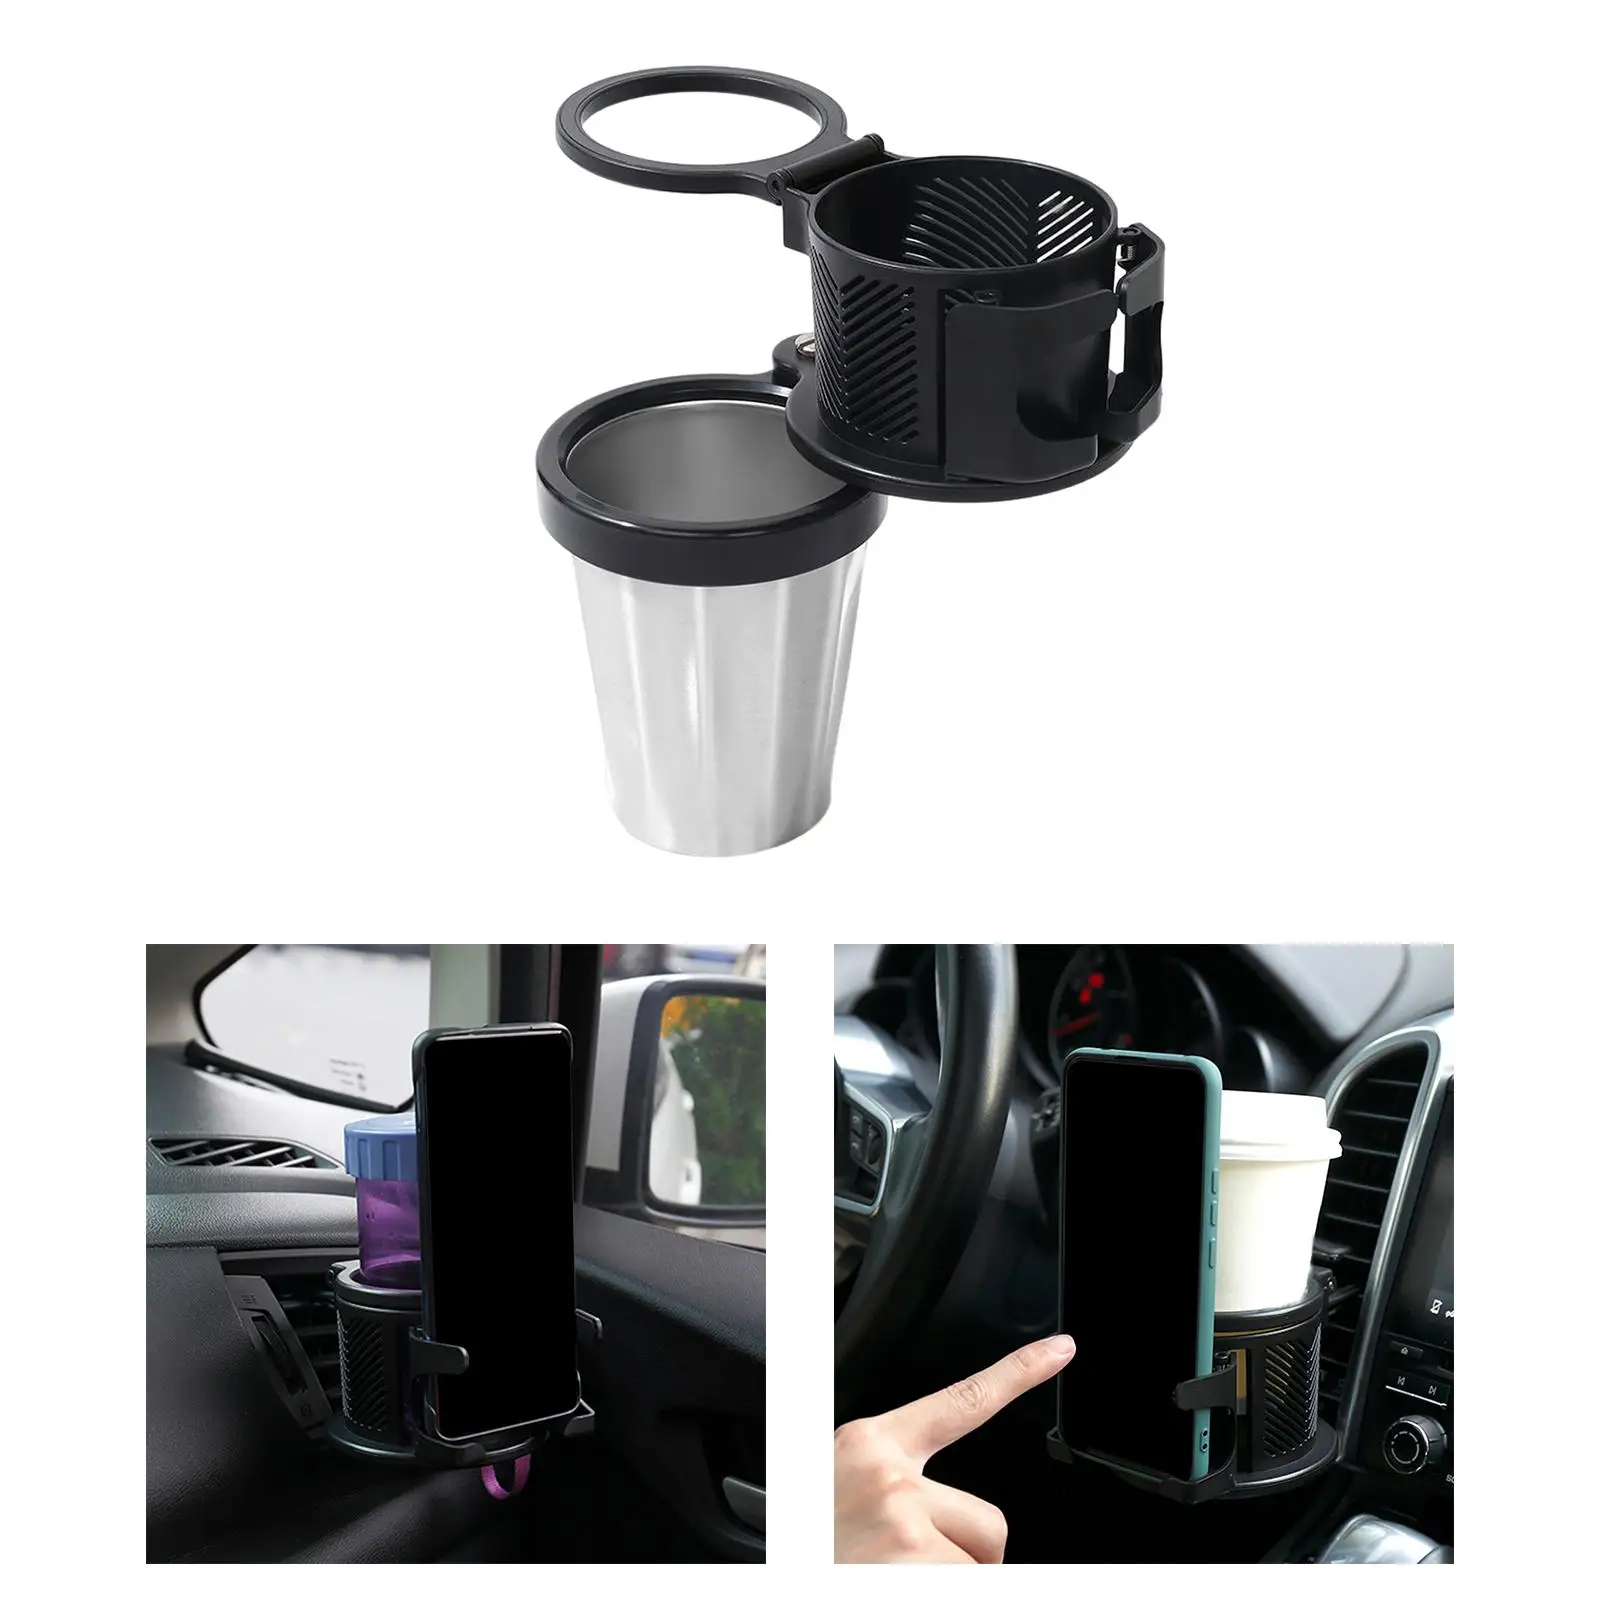 Adjustable Car Cup Holder Rotating Base Black Drink Storing Bottle Multifunctional Universal Detachable Cup Holder for Car